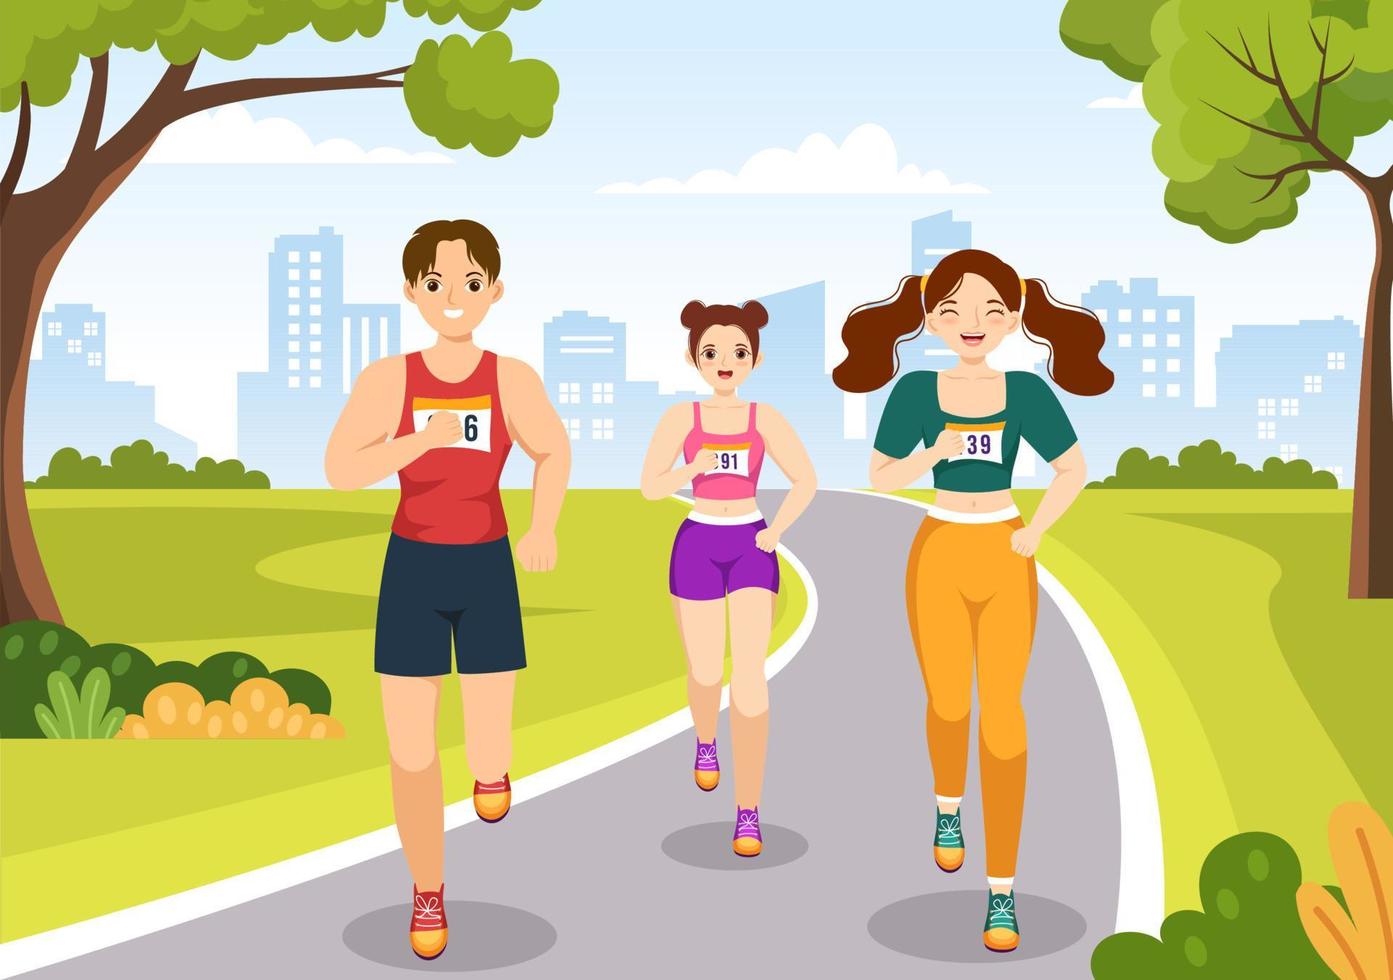 ilustração de corrida de maratona com pessoas correndo, torneio esportivo de jogging e corrida para alcançar a linha de chegada em modelo desenhado à mão de desenho animado plano vetor